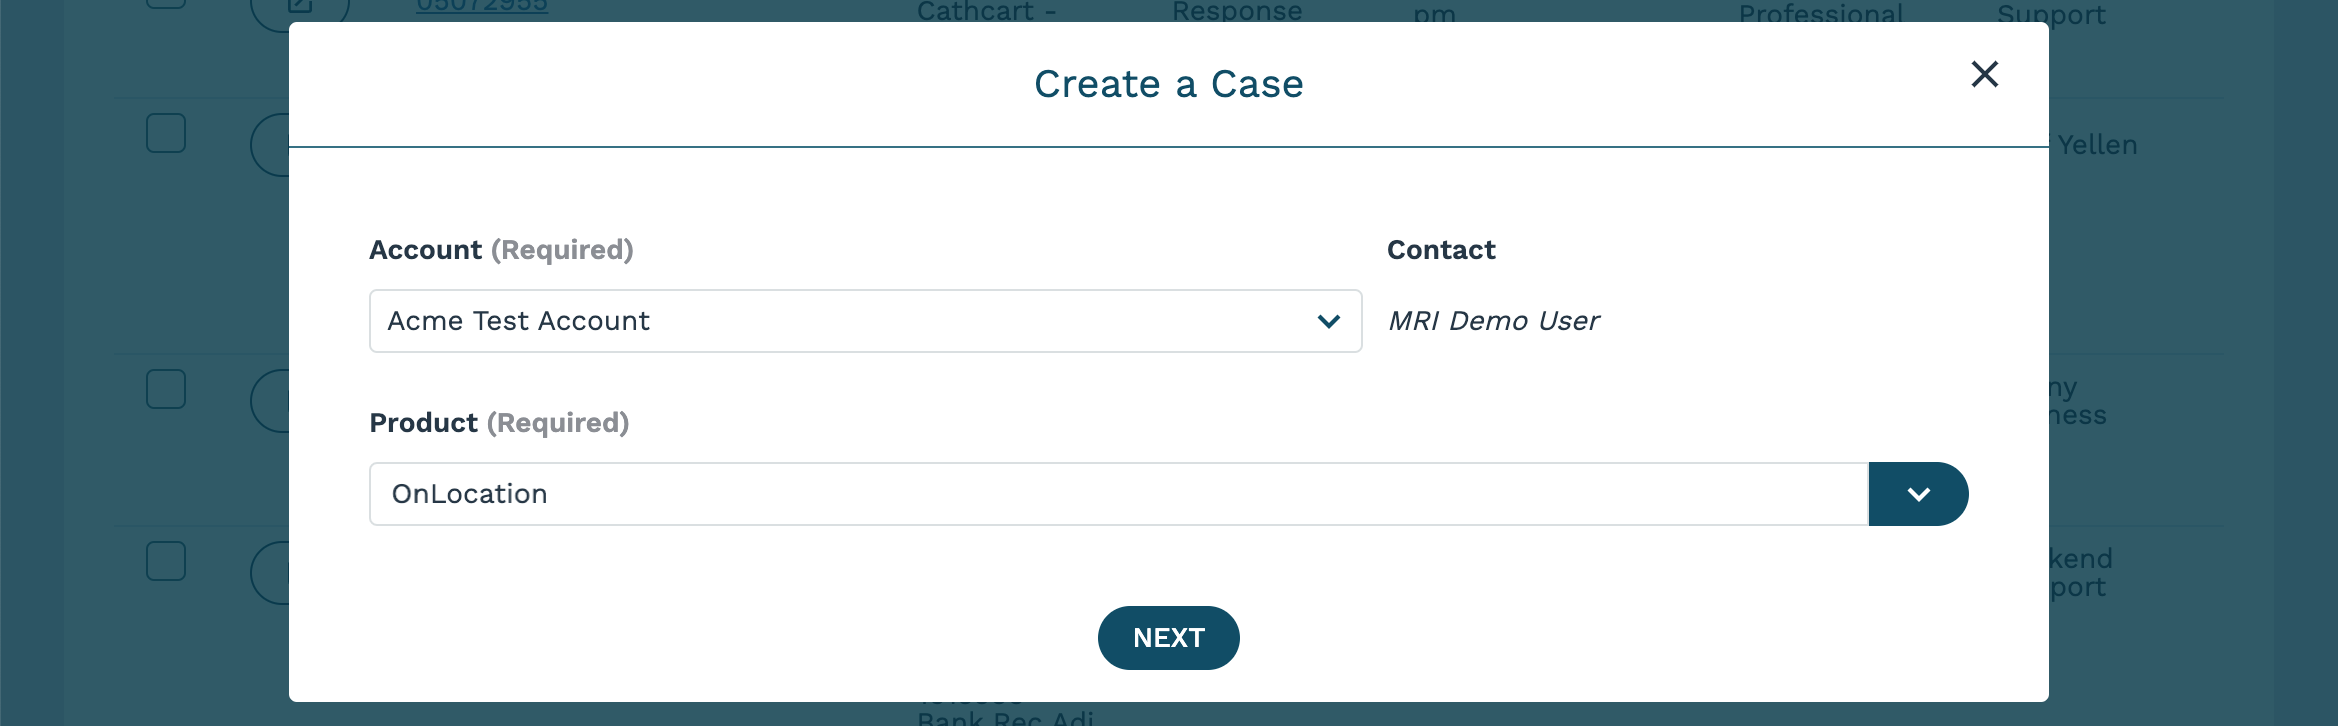 Client-Portal-New-Case-Craete.png